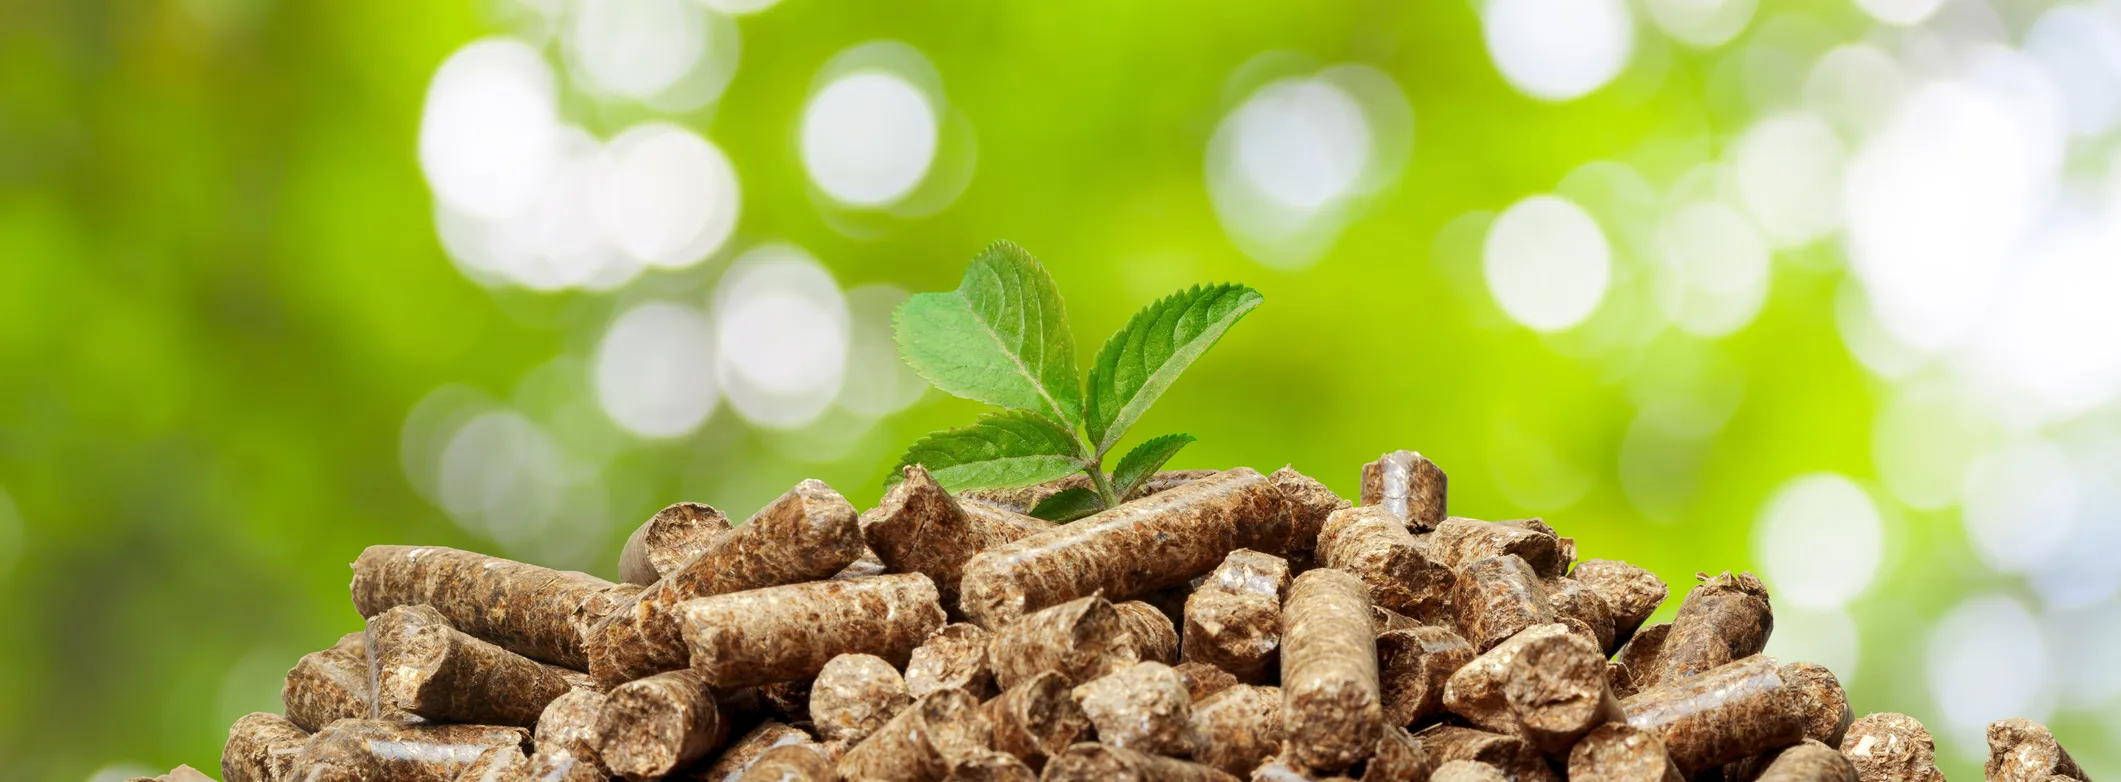 Biomasa pochodząca ze zrównoważonych źródeł